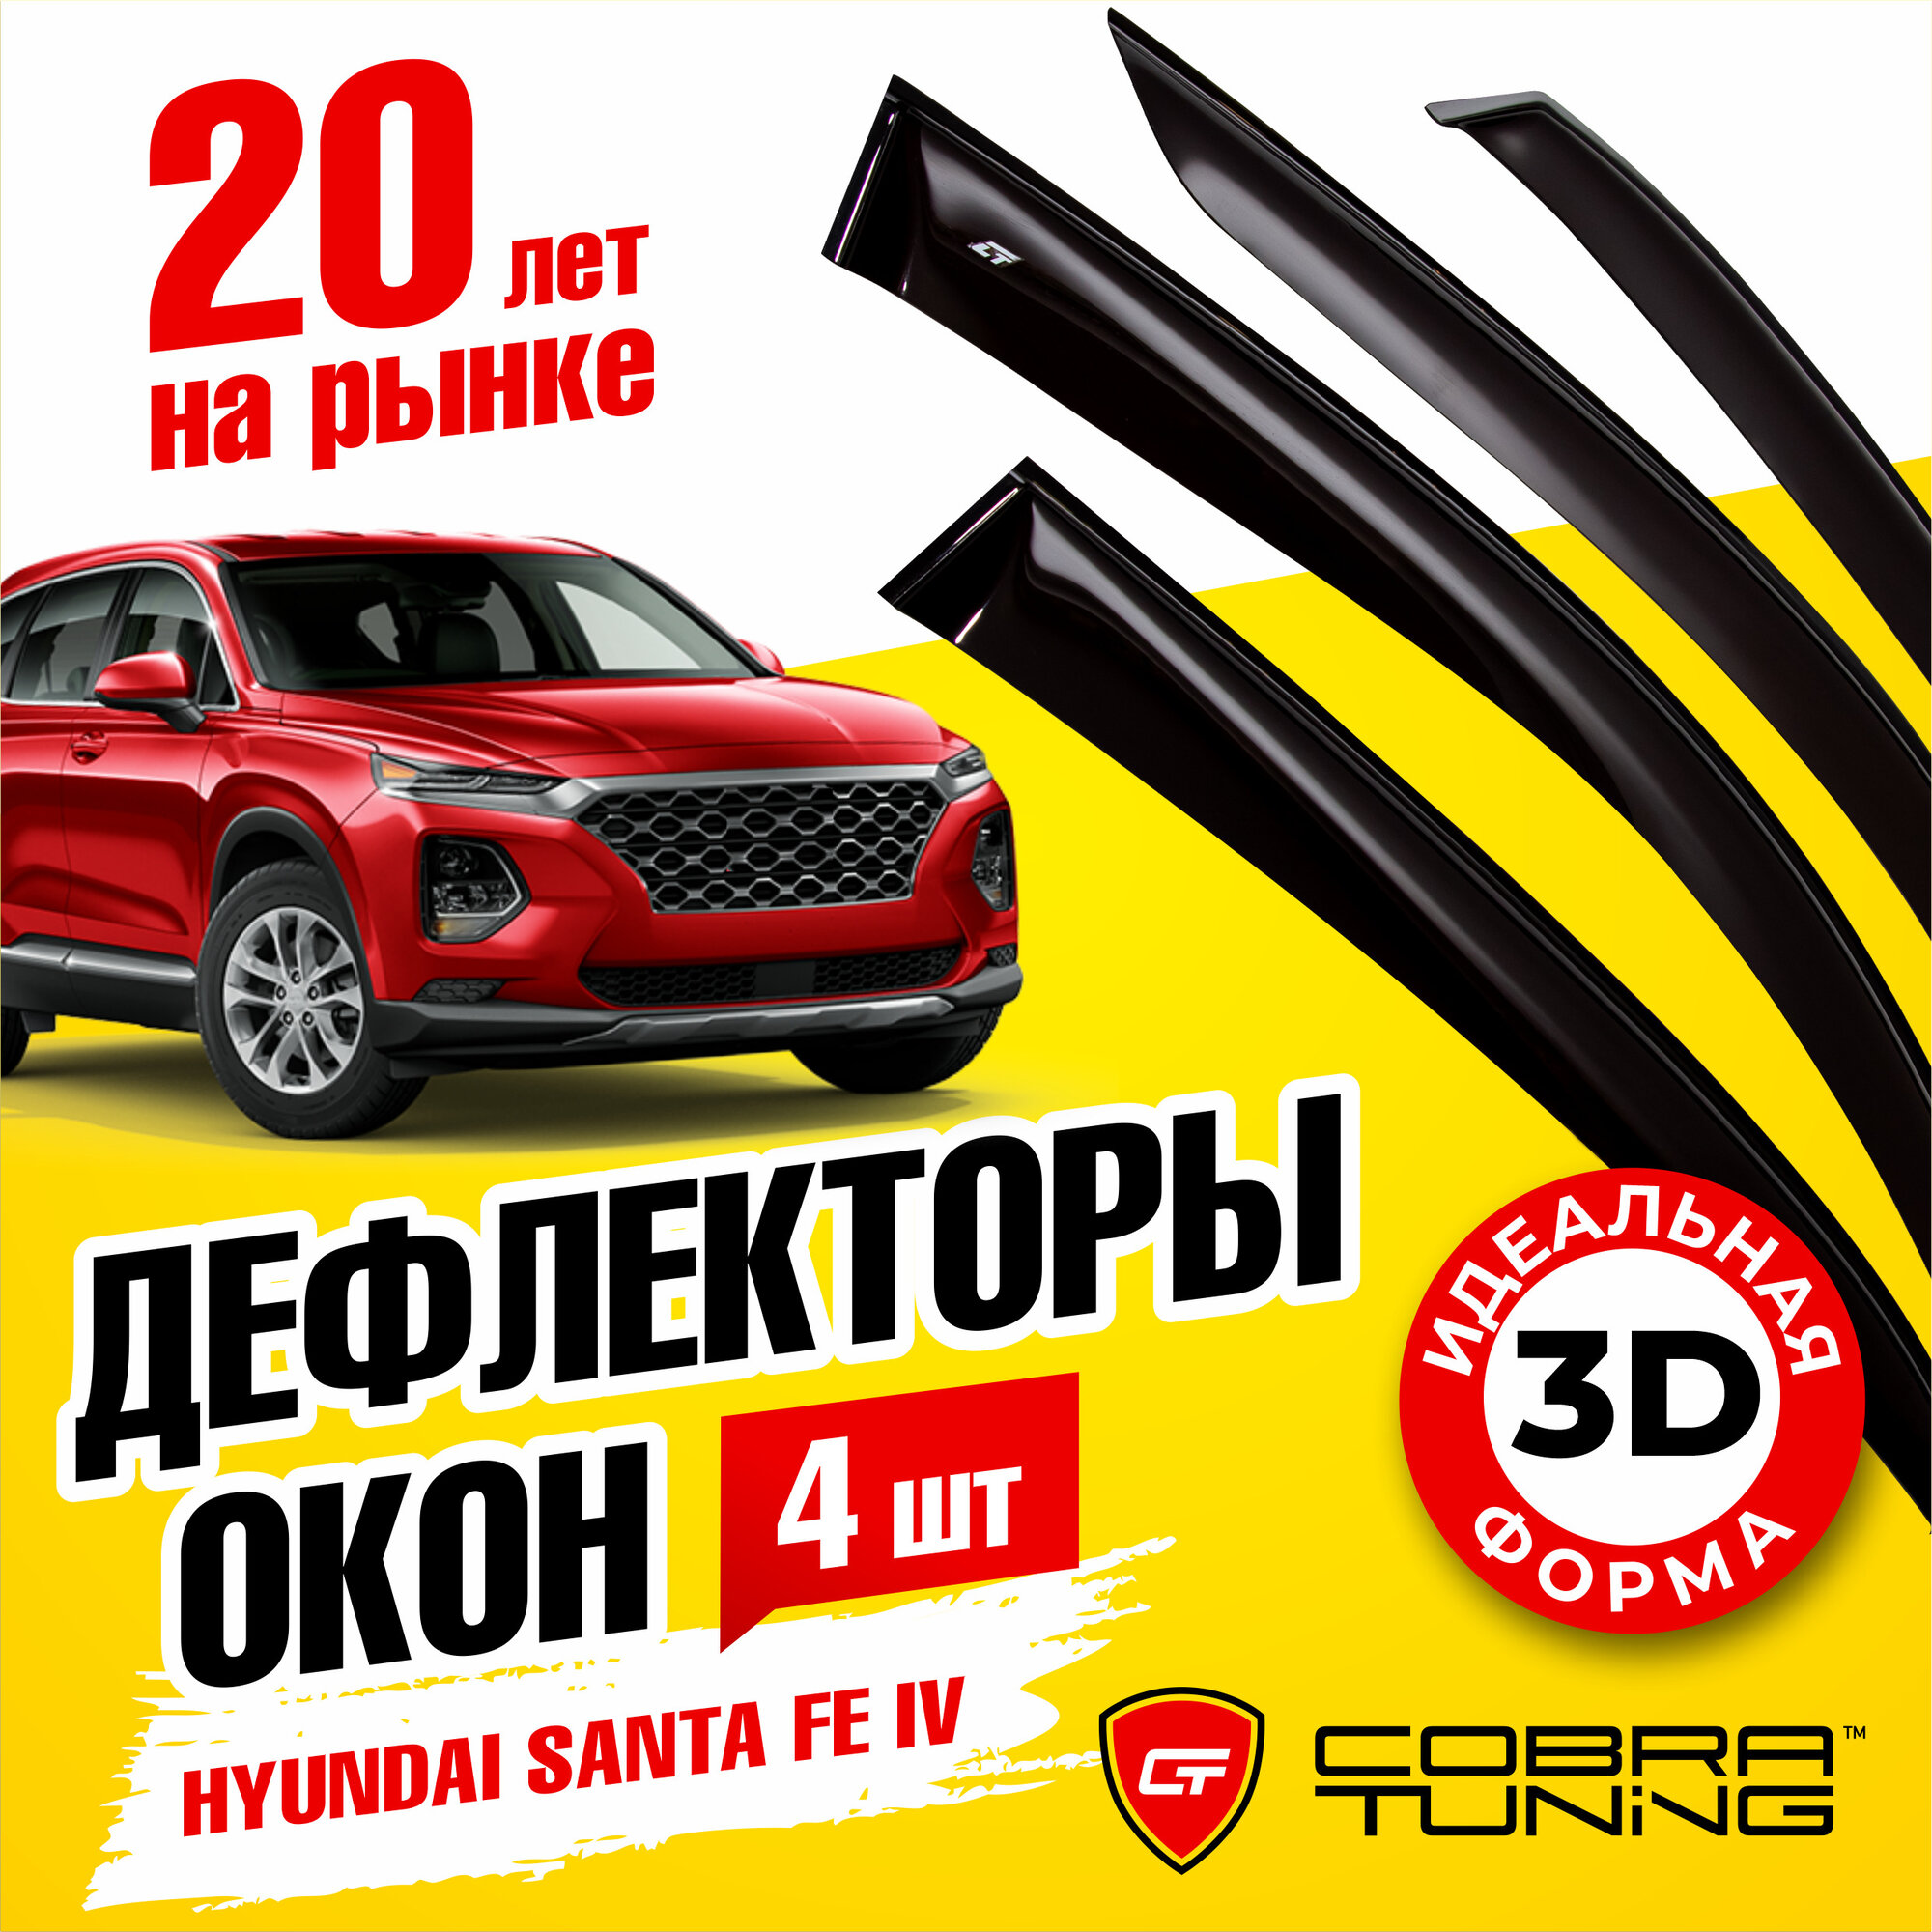 Дефлекторы боковых окон для Hyundai Santa Fe IV (Хендай Санта Фе 4) 2018-2022, ветровики на двери автомобиля, Cobra Tuning